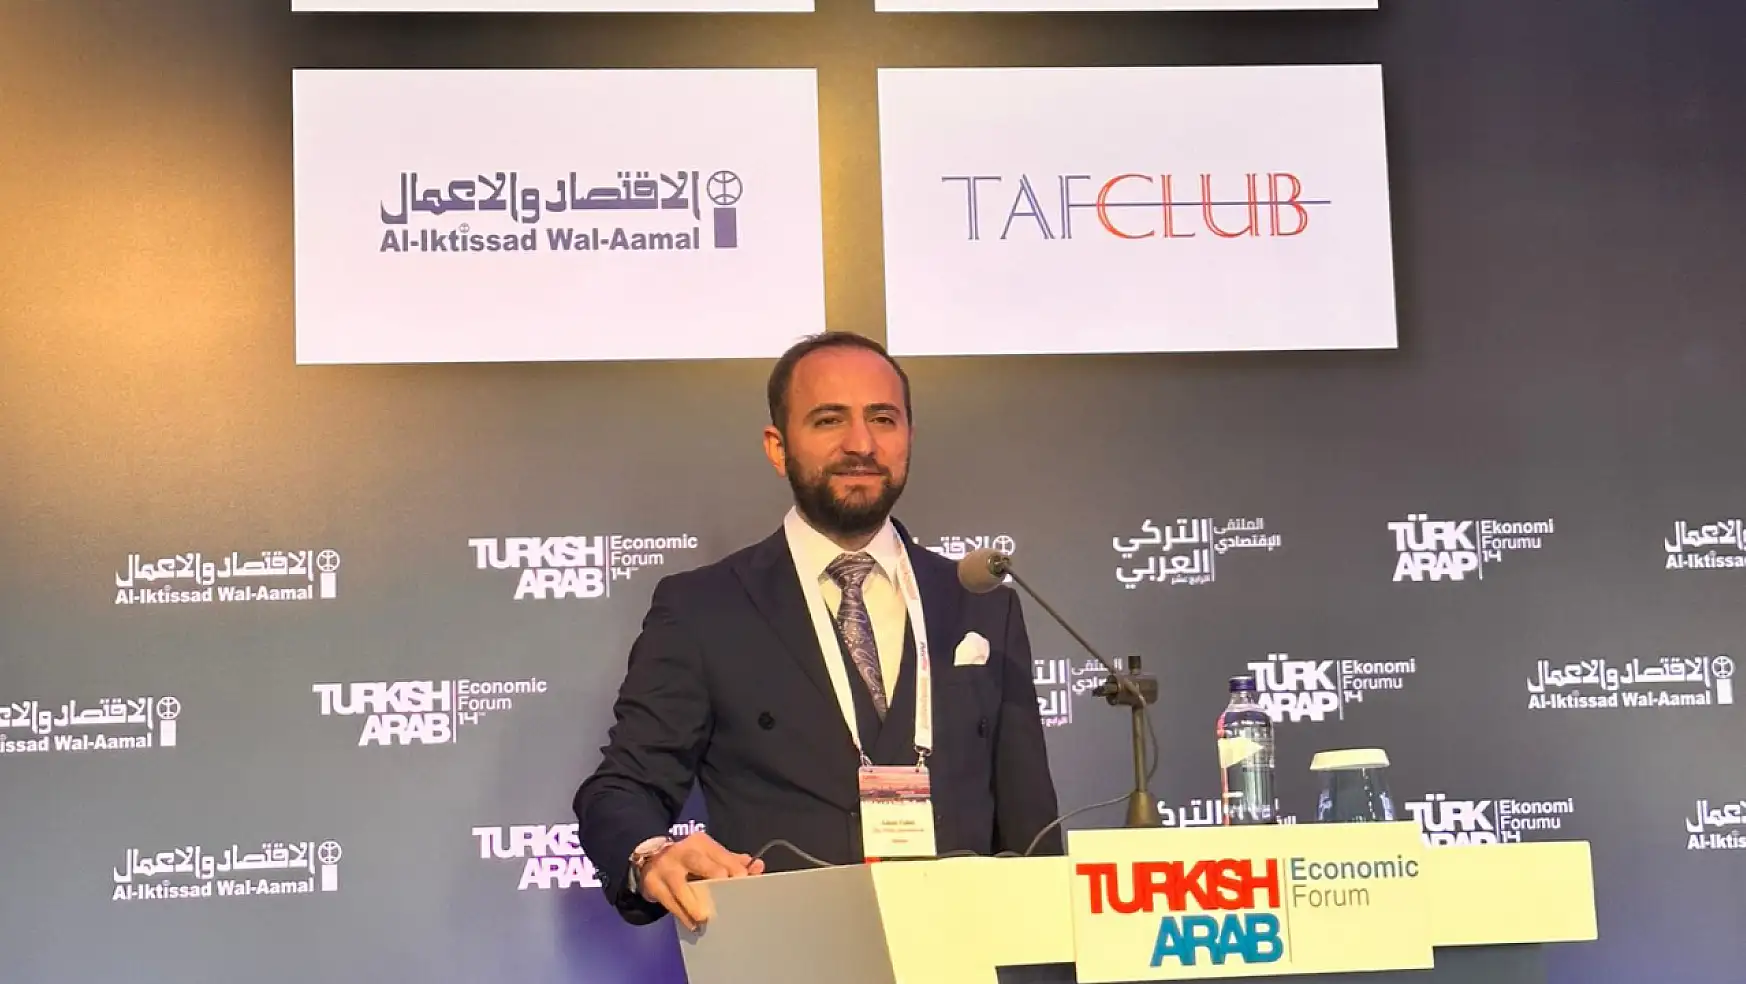 KONYAGİAD Türk-Arap Ekonomi Forumu'na (TAF) katıldı!